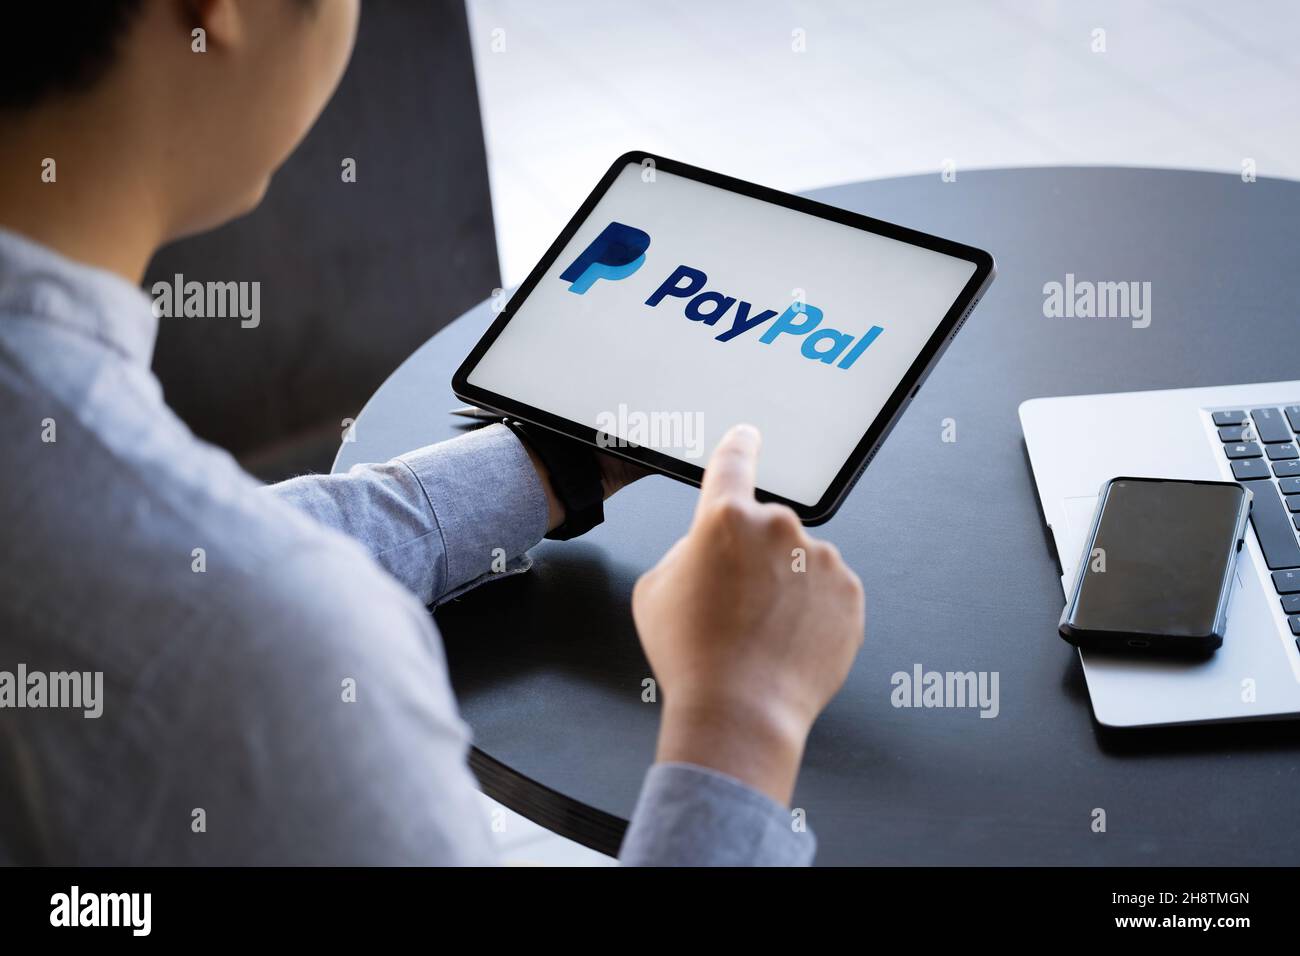 CHIANG MAI, THAÏLANDE - 28 NOVEMBRE 2021 : homme mains tenant ipad avec des applications PayPal sur l'écran.PayPal est un système de paiement électronique en ligne. Banque D'Images